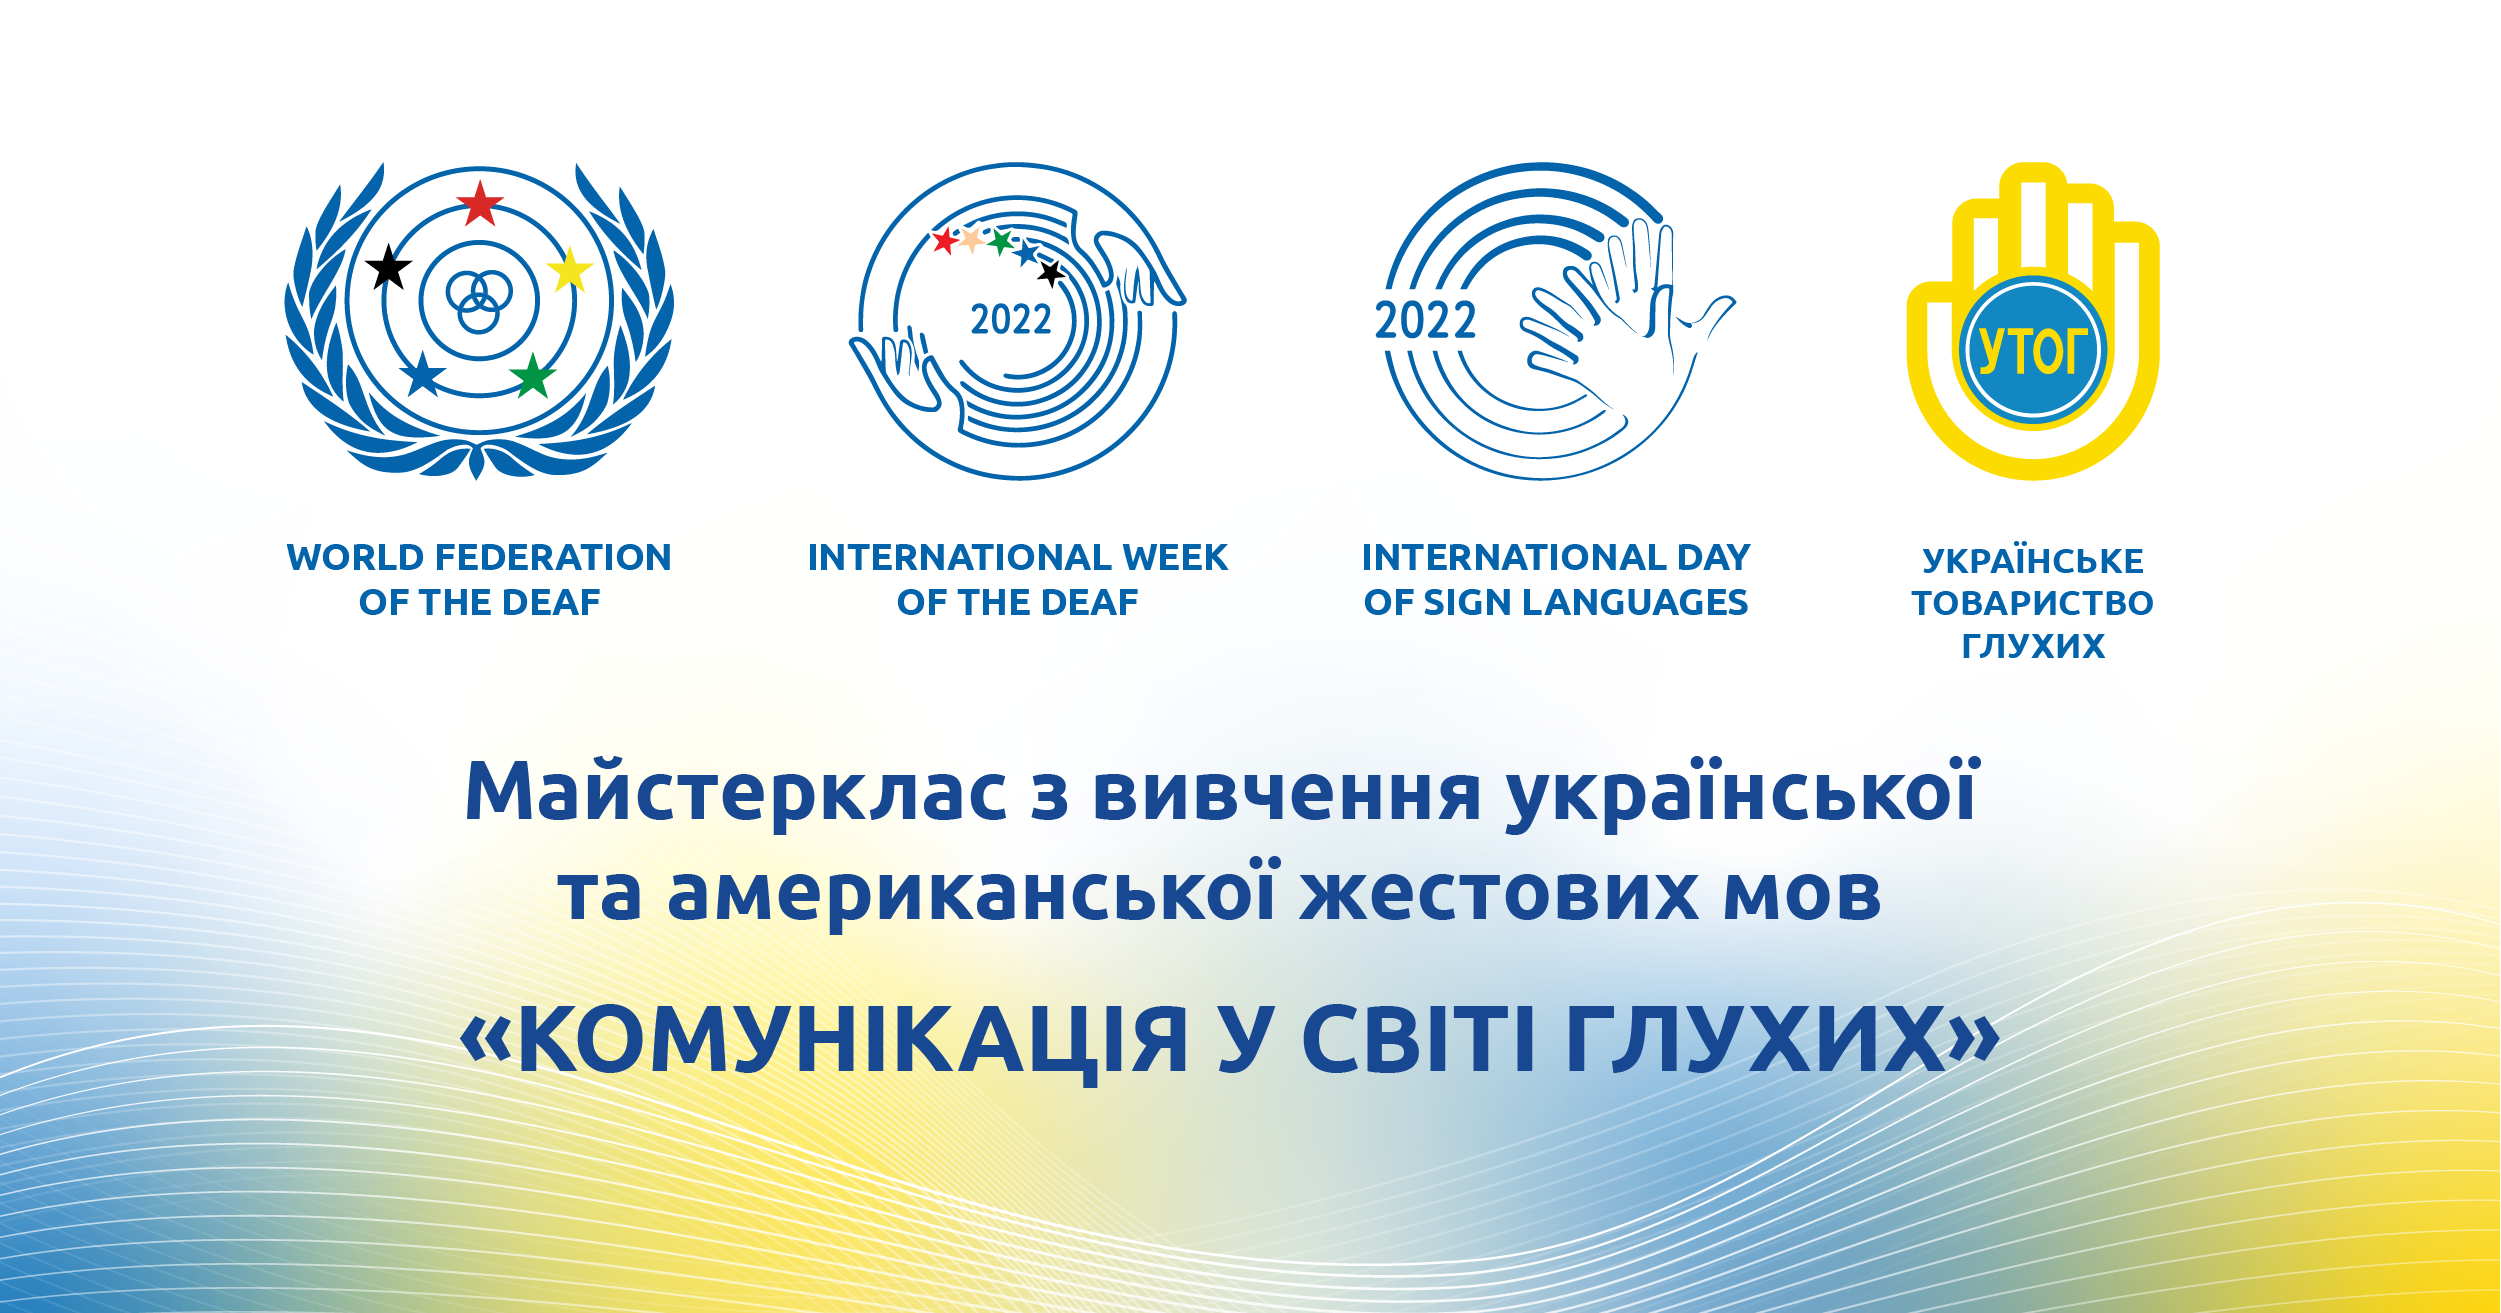 Майстер клас з вивчення української та американської жестових мов "Комунікація у світі глухих"